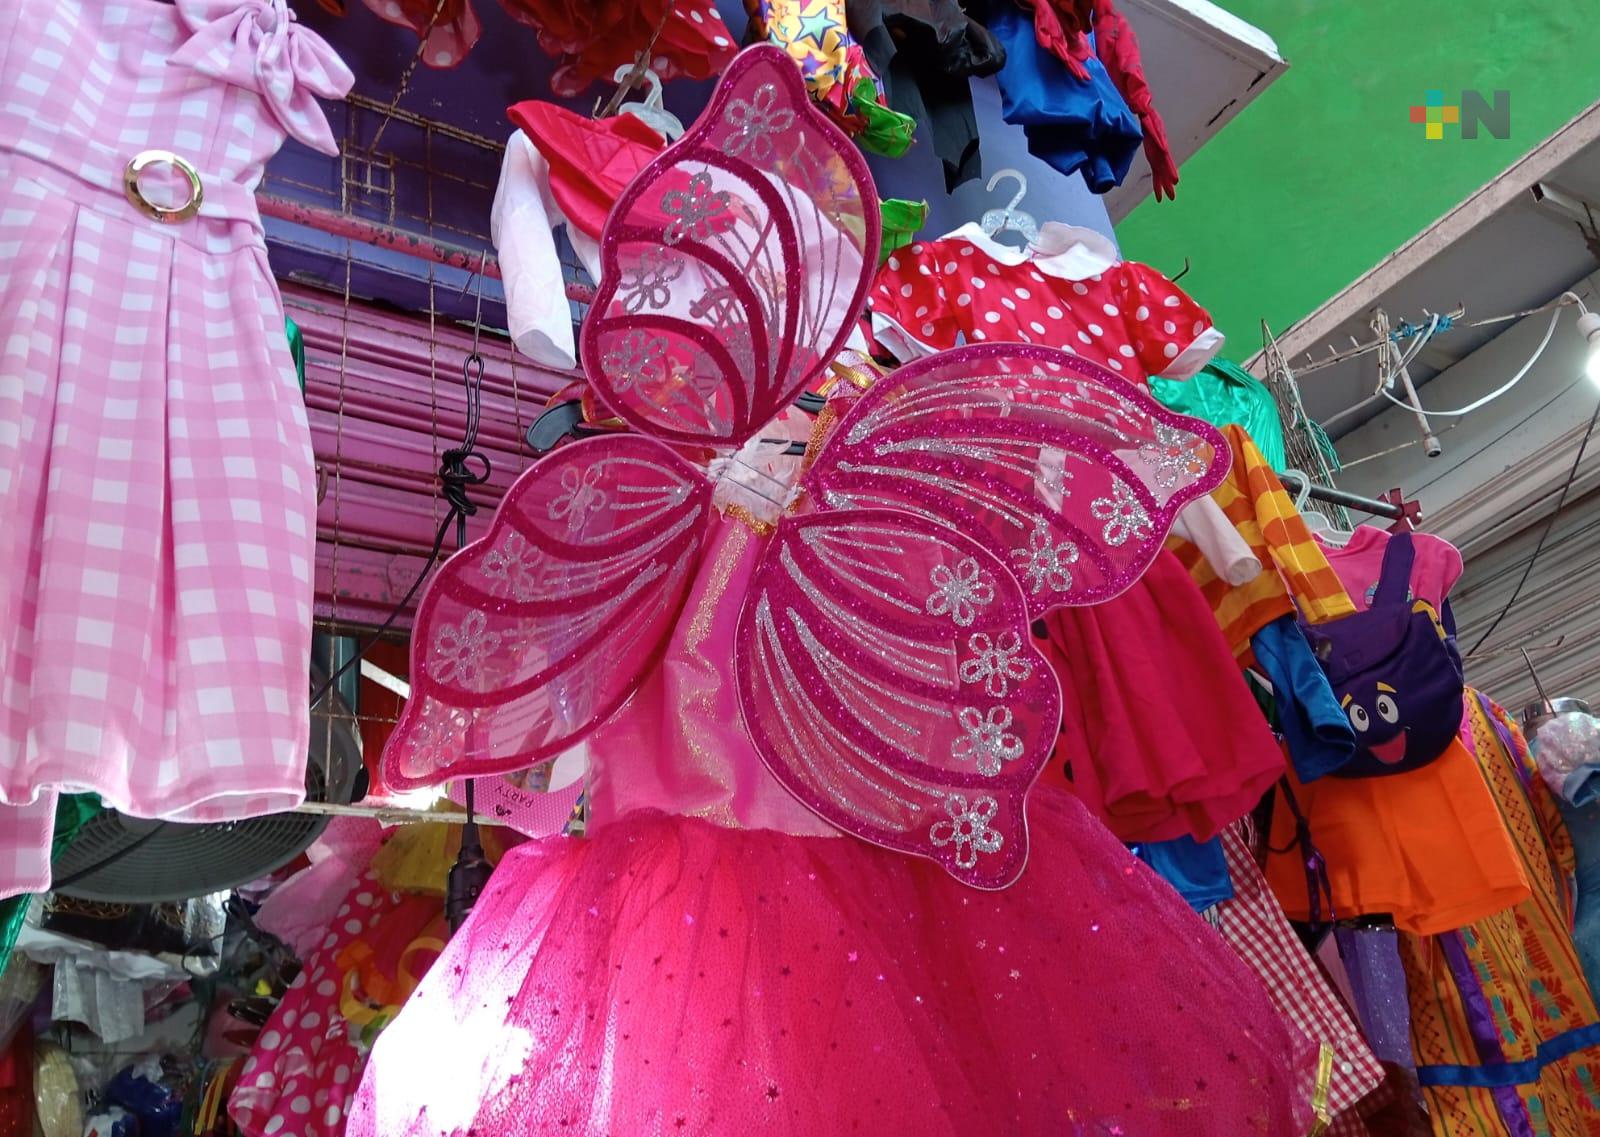 Comerciantes de disfraces esperan mejorar ventas por festejos a infantes